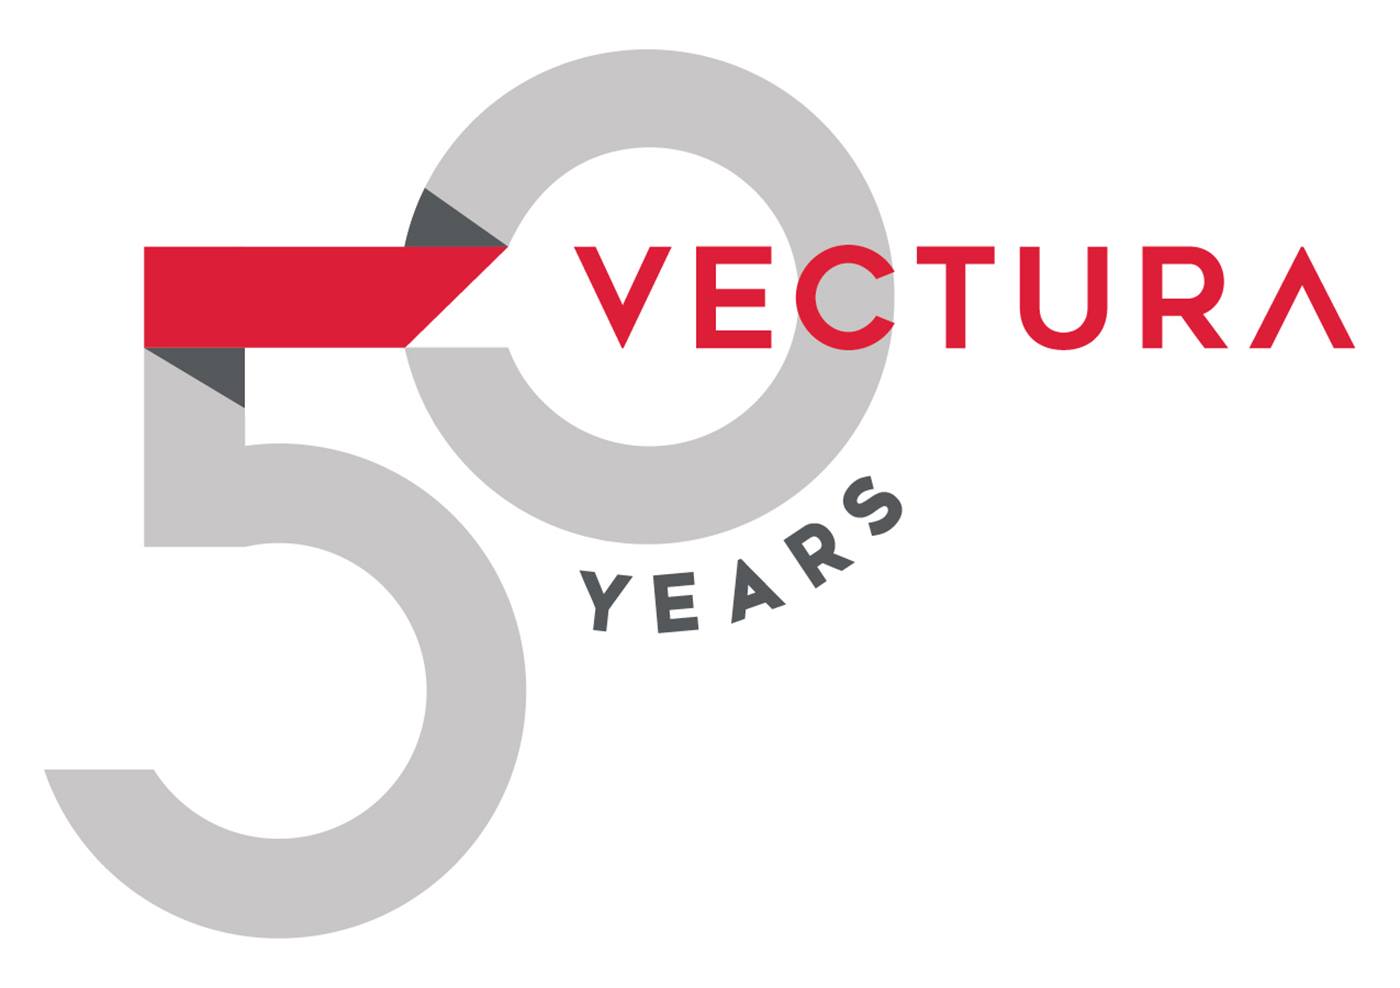 Vectura pallet crane turns 50